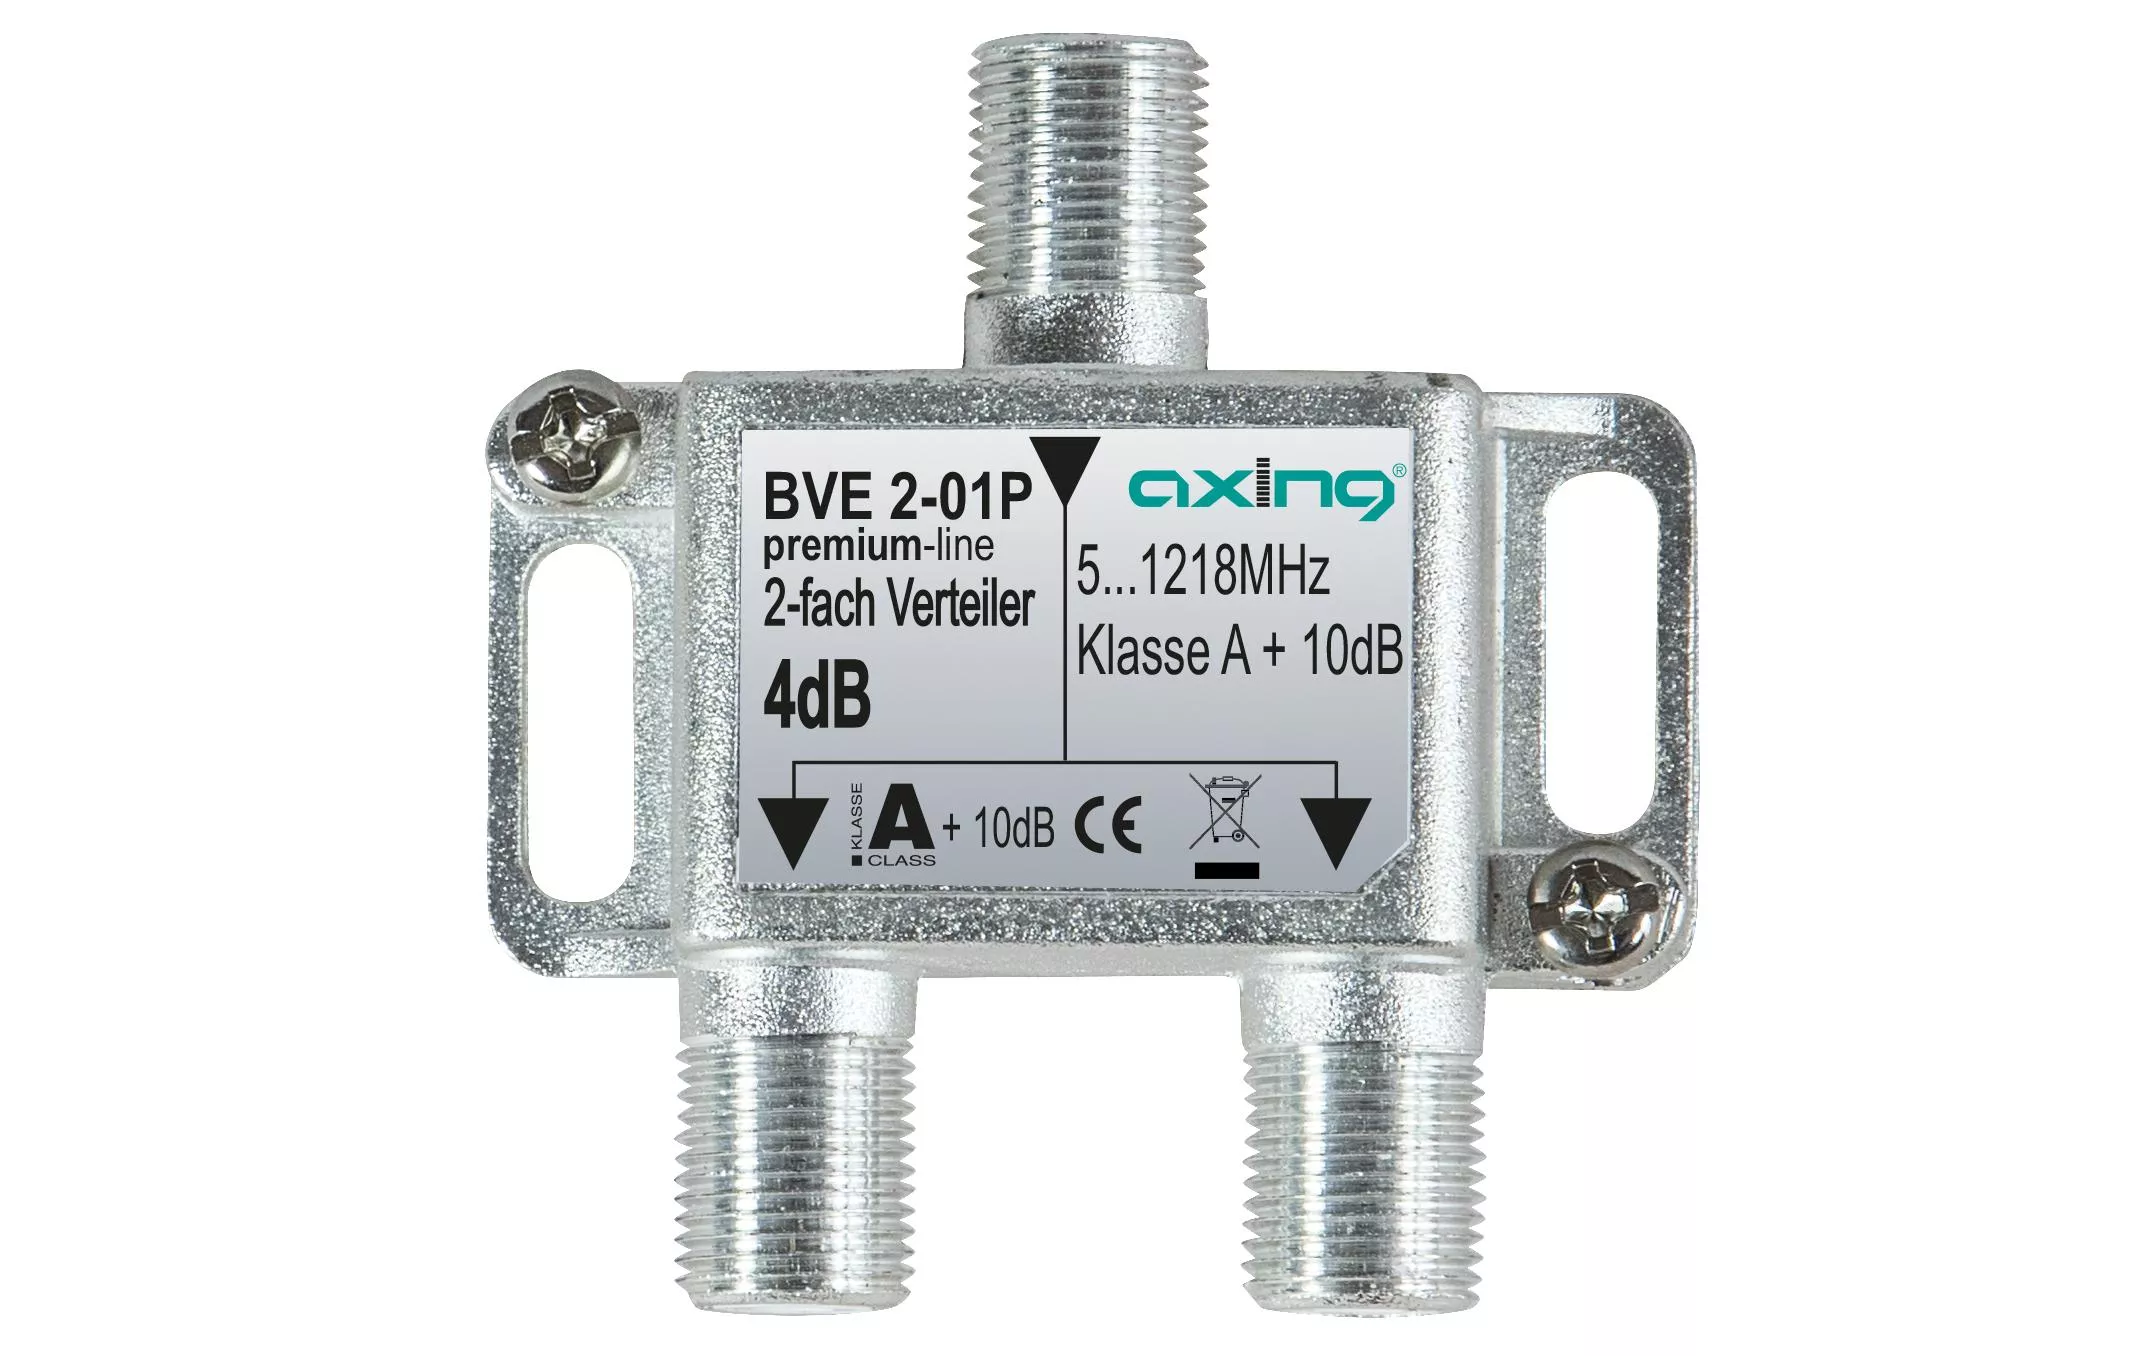 Distributeur double BVE 2-01P 51218 MHz Modèle 01